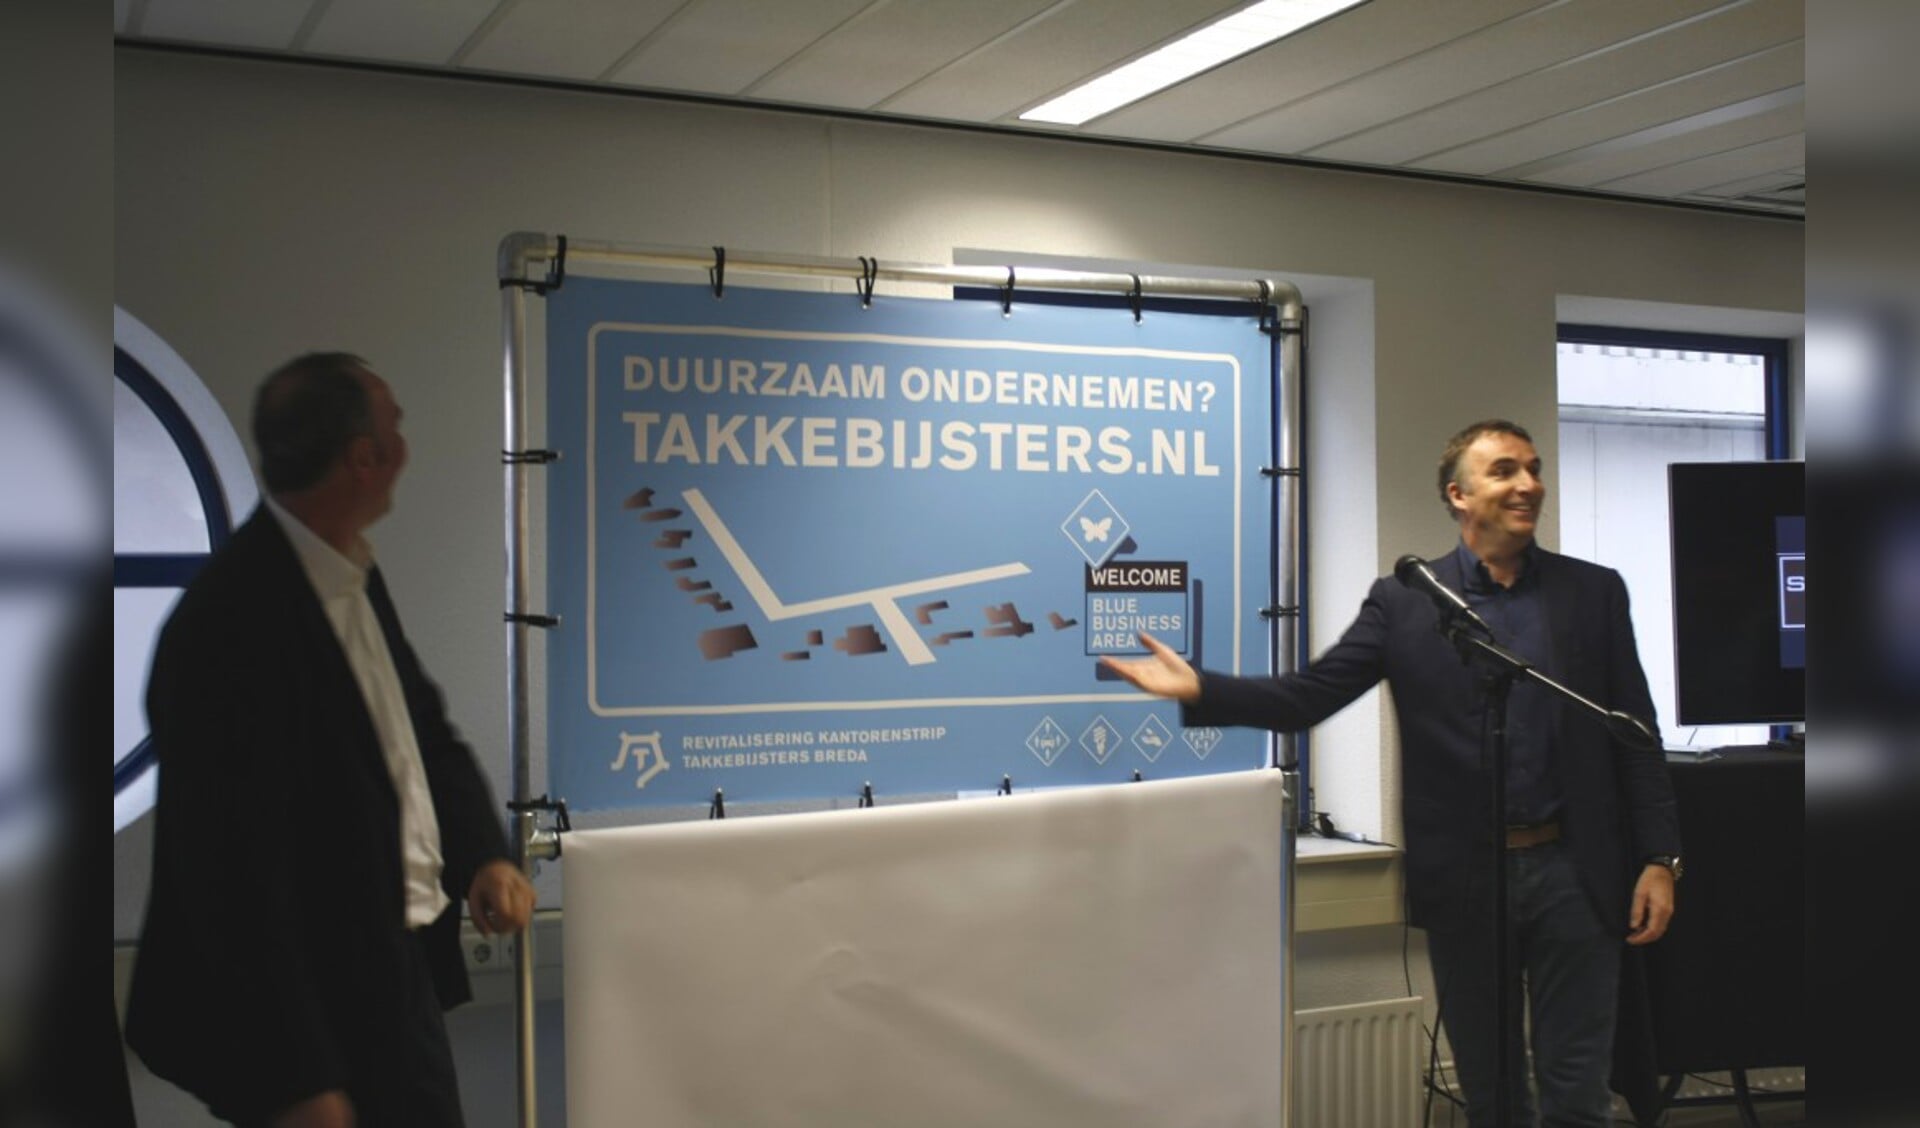 Initiatiefnemer Aert van der Goes opent samen met wethouder Cees Meeuwis het Blue Business Area.